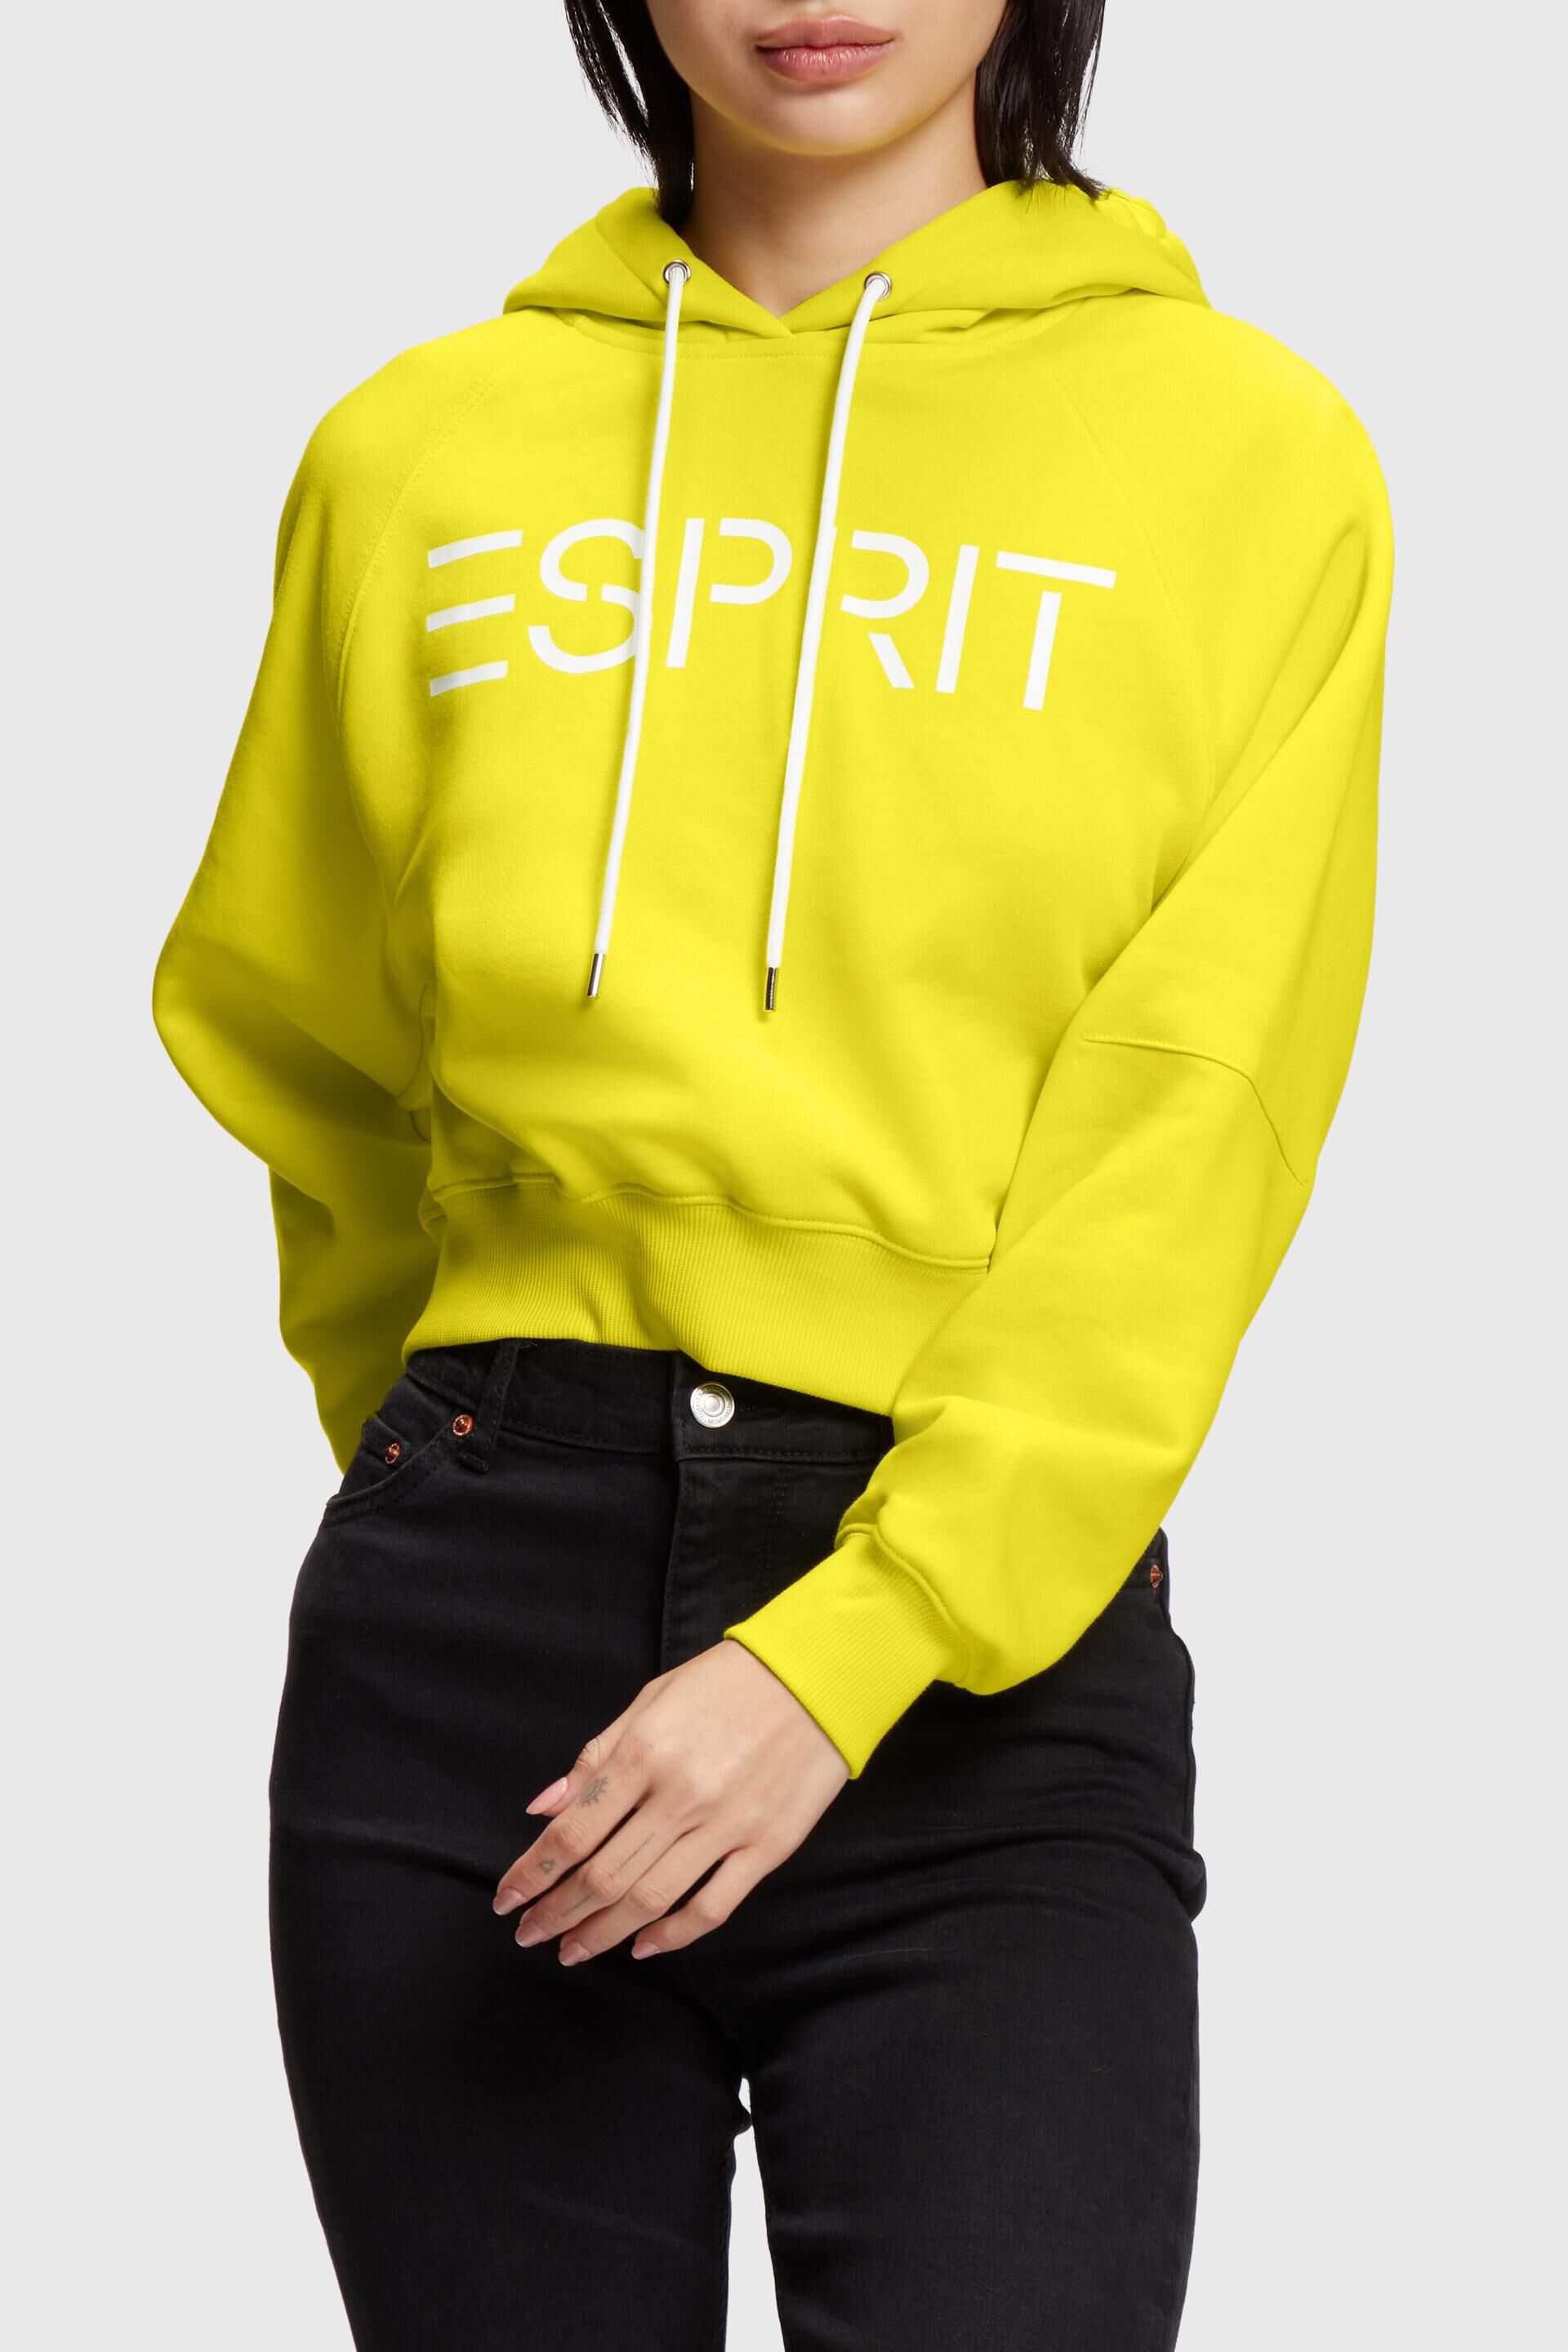 Esprit Cropped hoodie logo